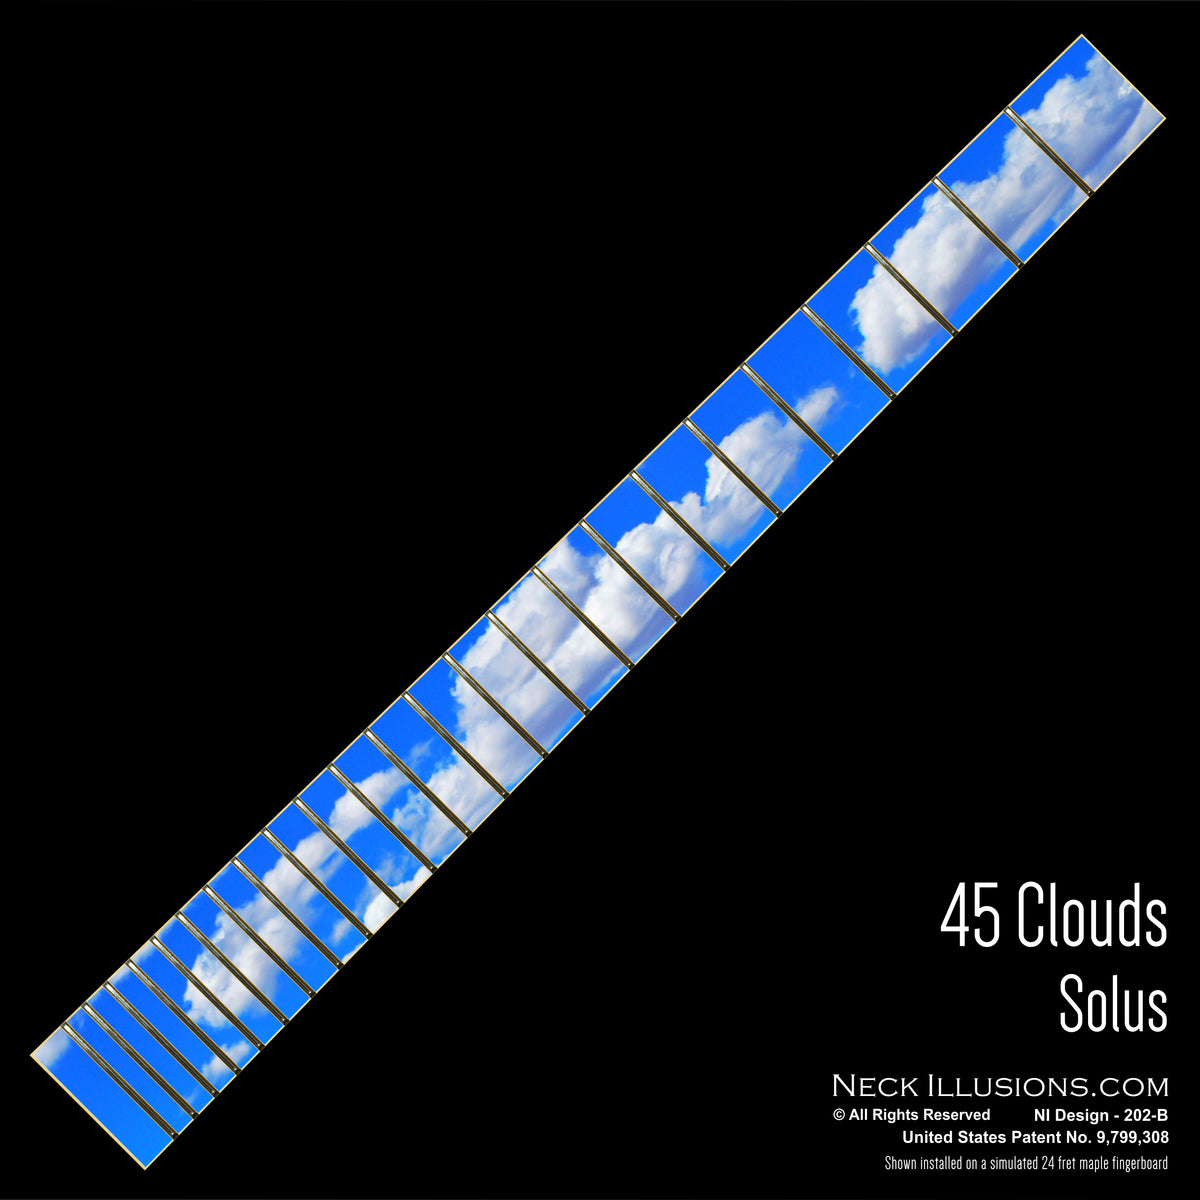 45 Clouds